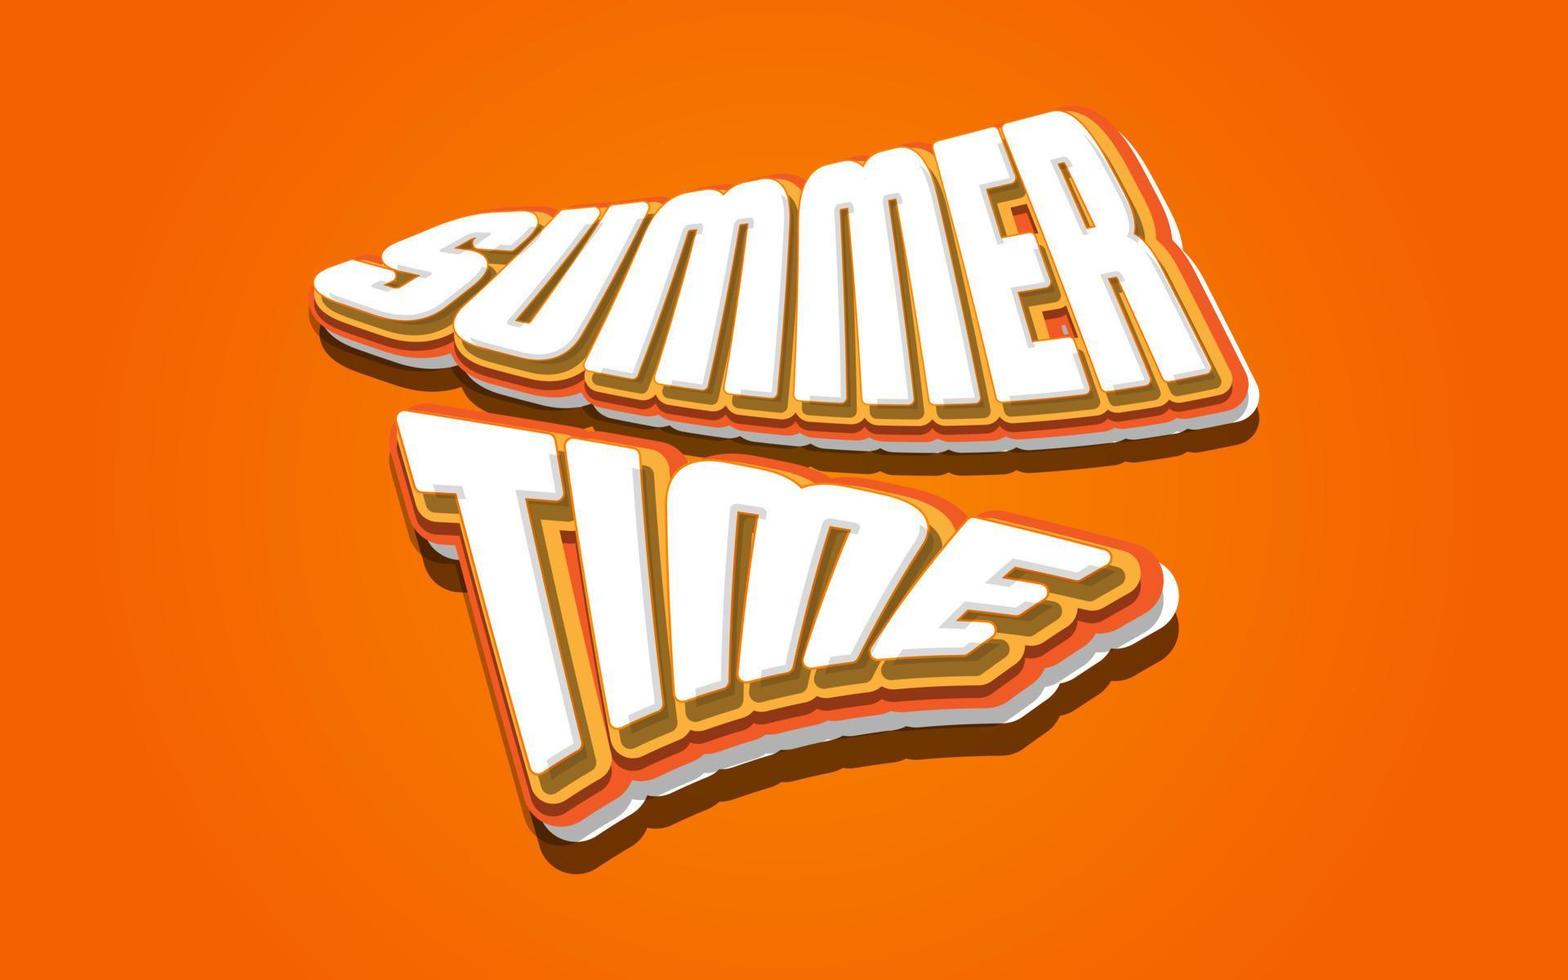 zomertijd belettering met 3D-wit en oranje stijl geïsoleerd op een oranje achtergrond. zomertijd spandoek of poster vector